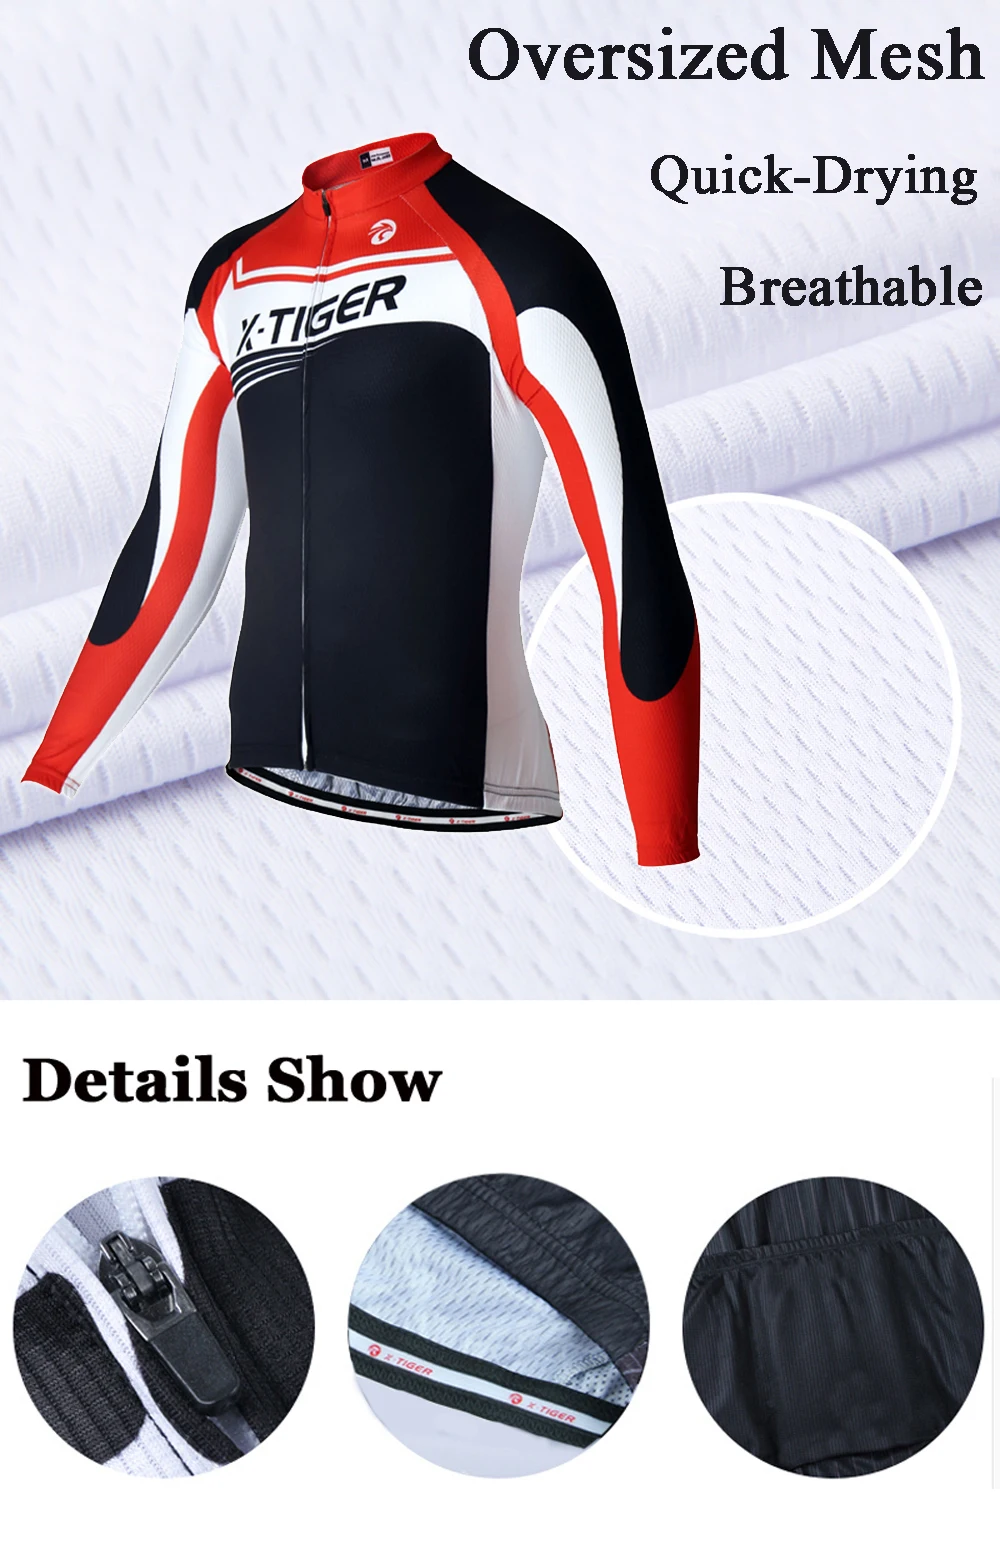 X-TIGER с длинным рукавом Pro майки спортивные для мужчин мотобайк, велосипед, велотренажер костюмы Майо Ropa Ciclismo Спортивная велосипед одежда